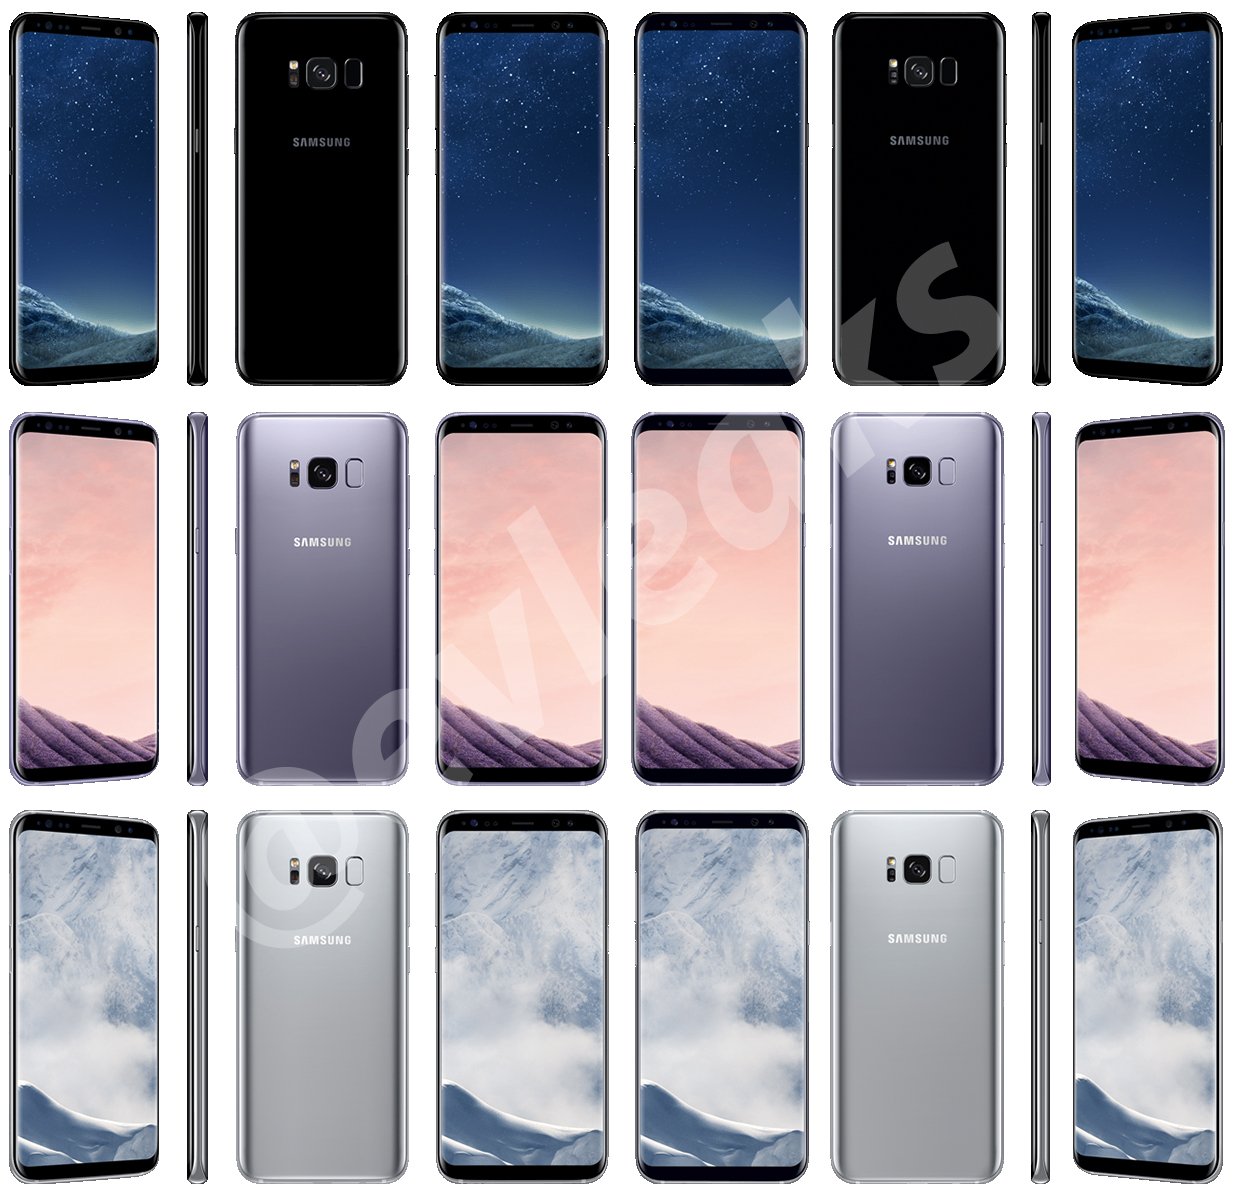 Couleurs de l'image du Samsung Galaxy S8